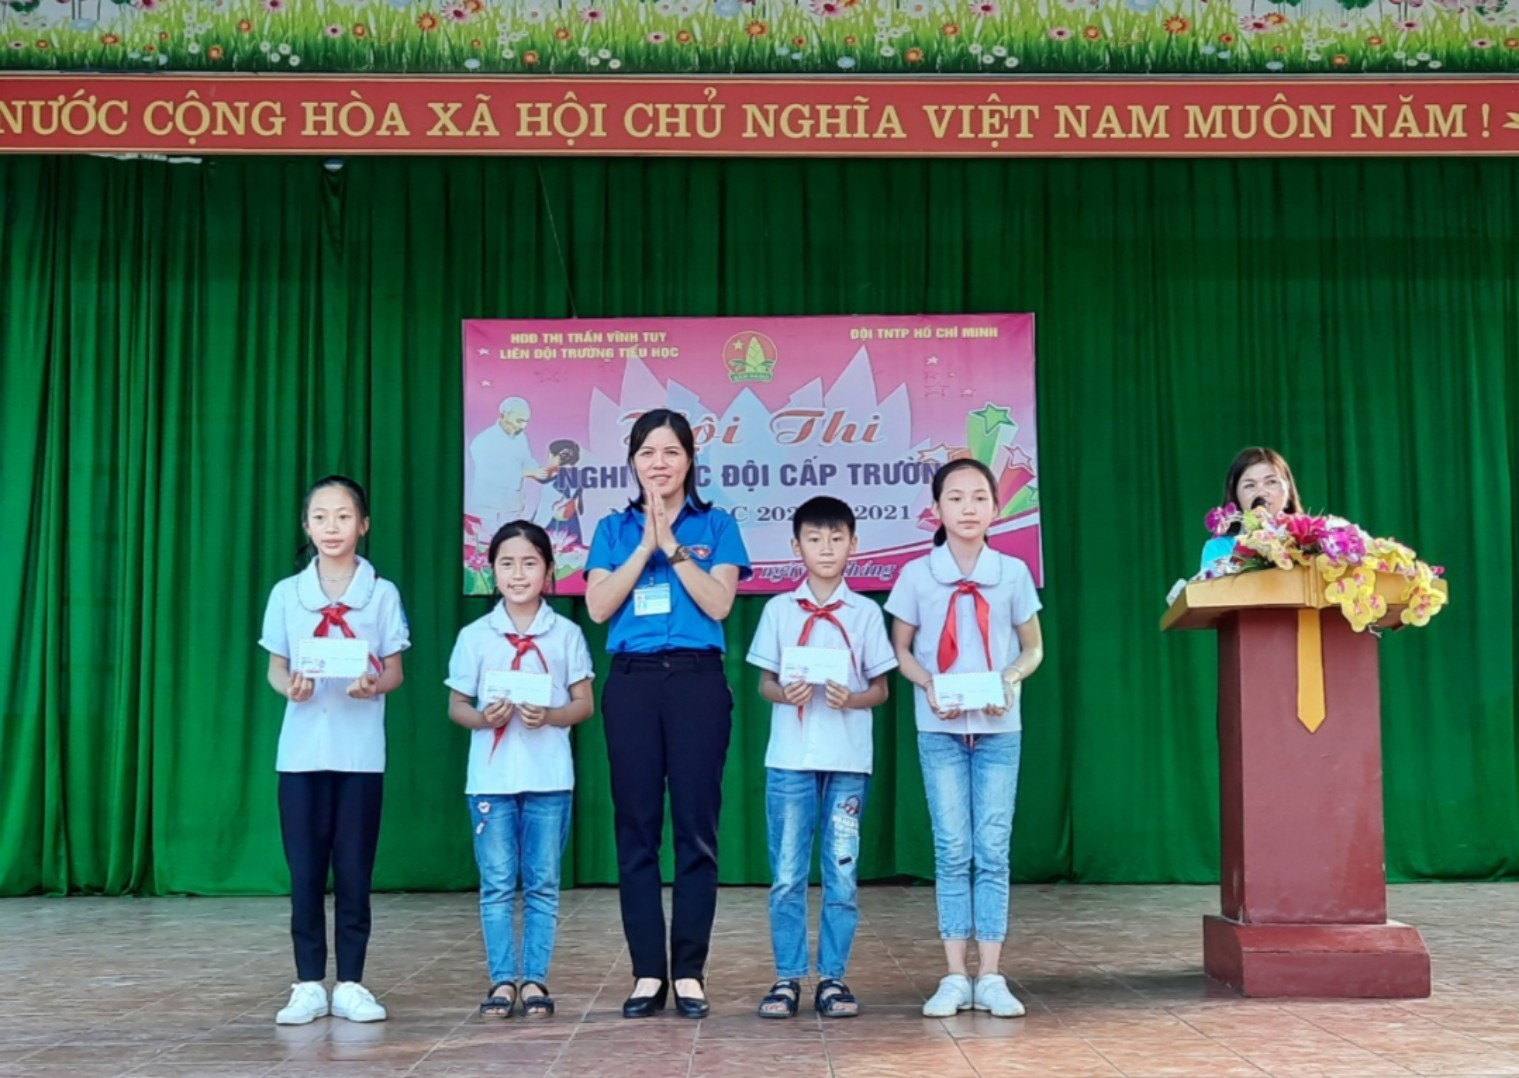 Trường Tiểu học thị trấn Vĩnh Tuy tổ chức Hội thi nghi thức đội cấp trường